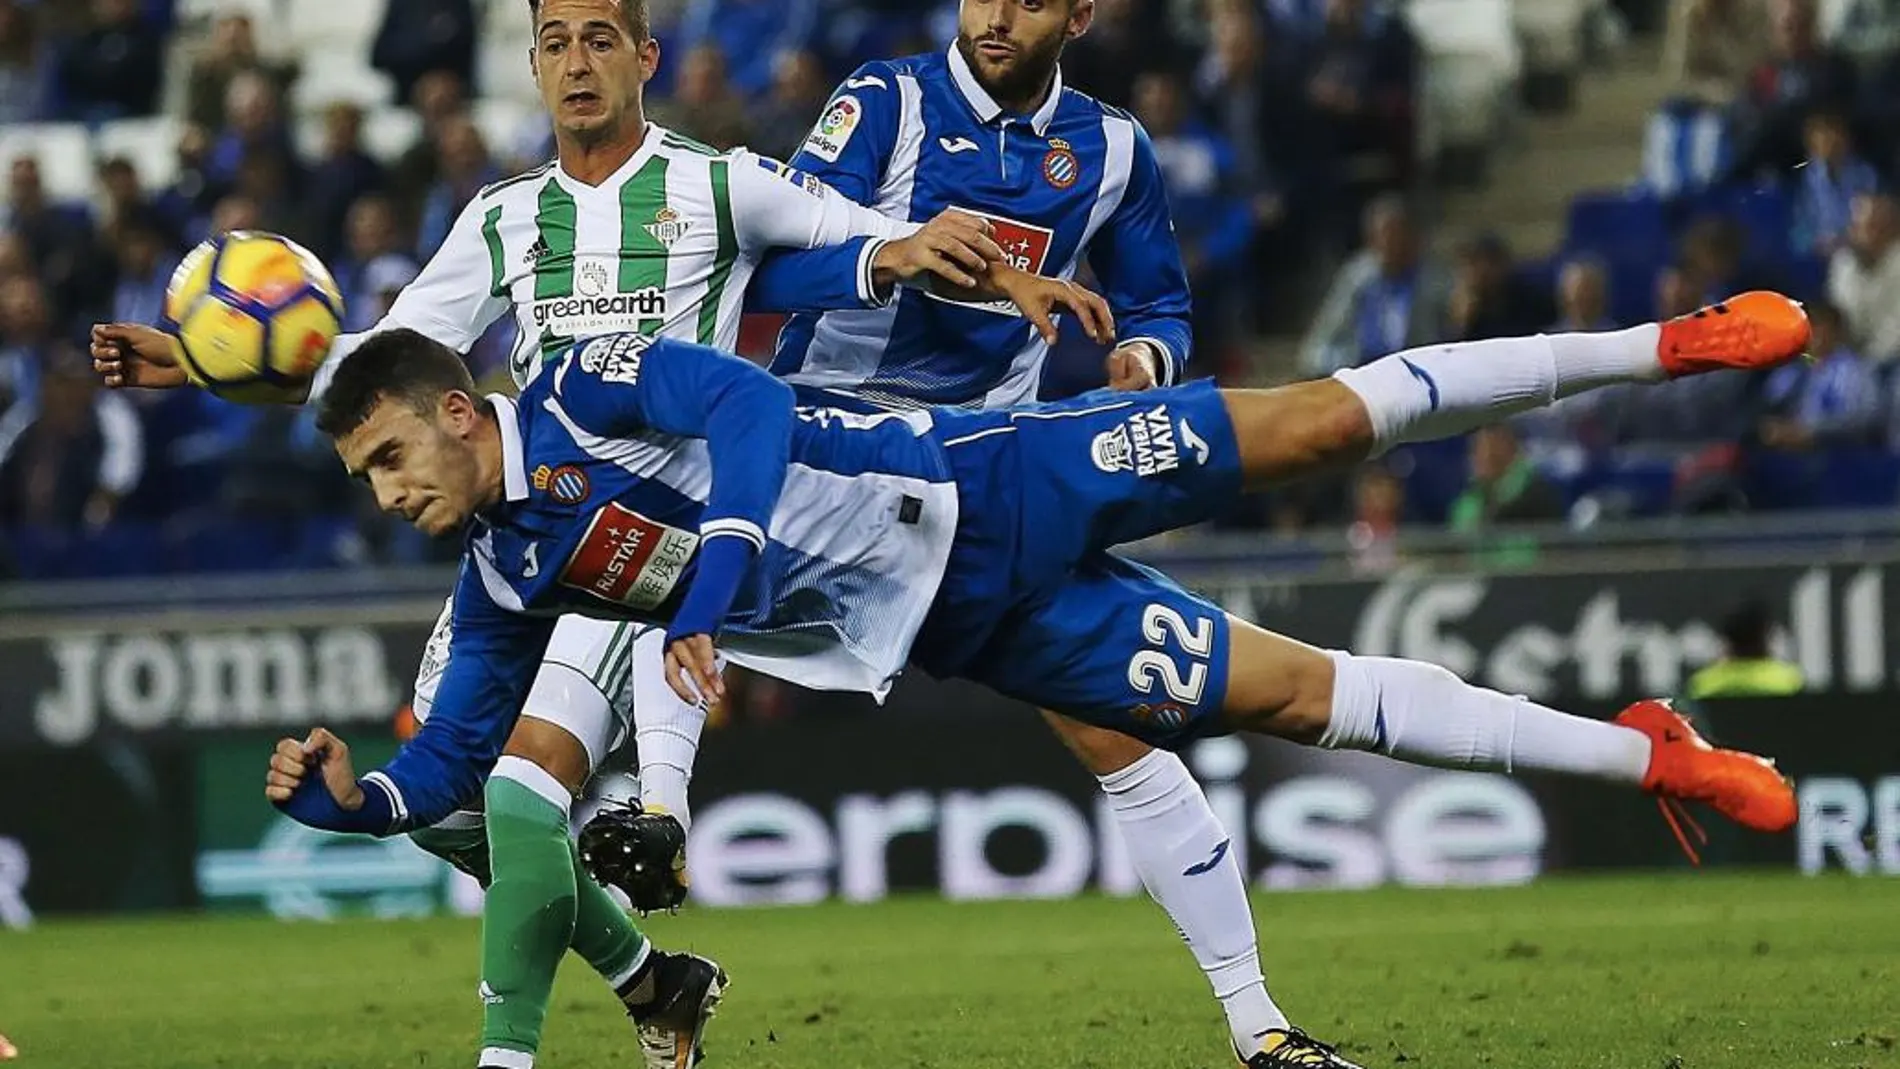 El defensa del CD Espanyol, Mario Hermoso (22), despeja un balón ante el delantero del Real Betis, Sergio León